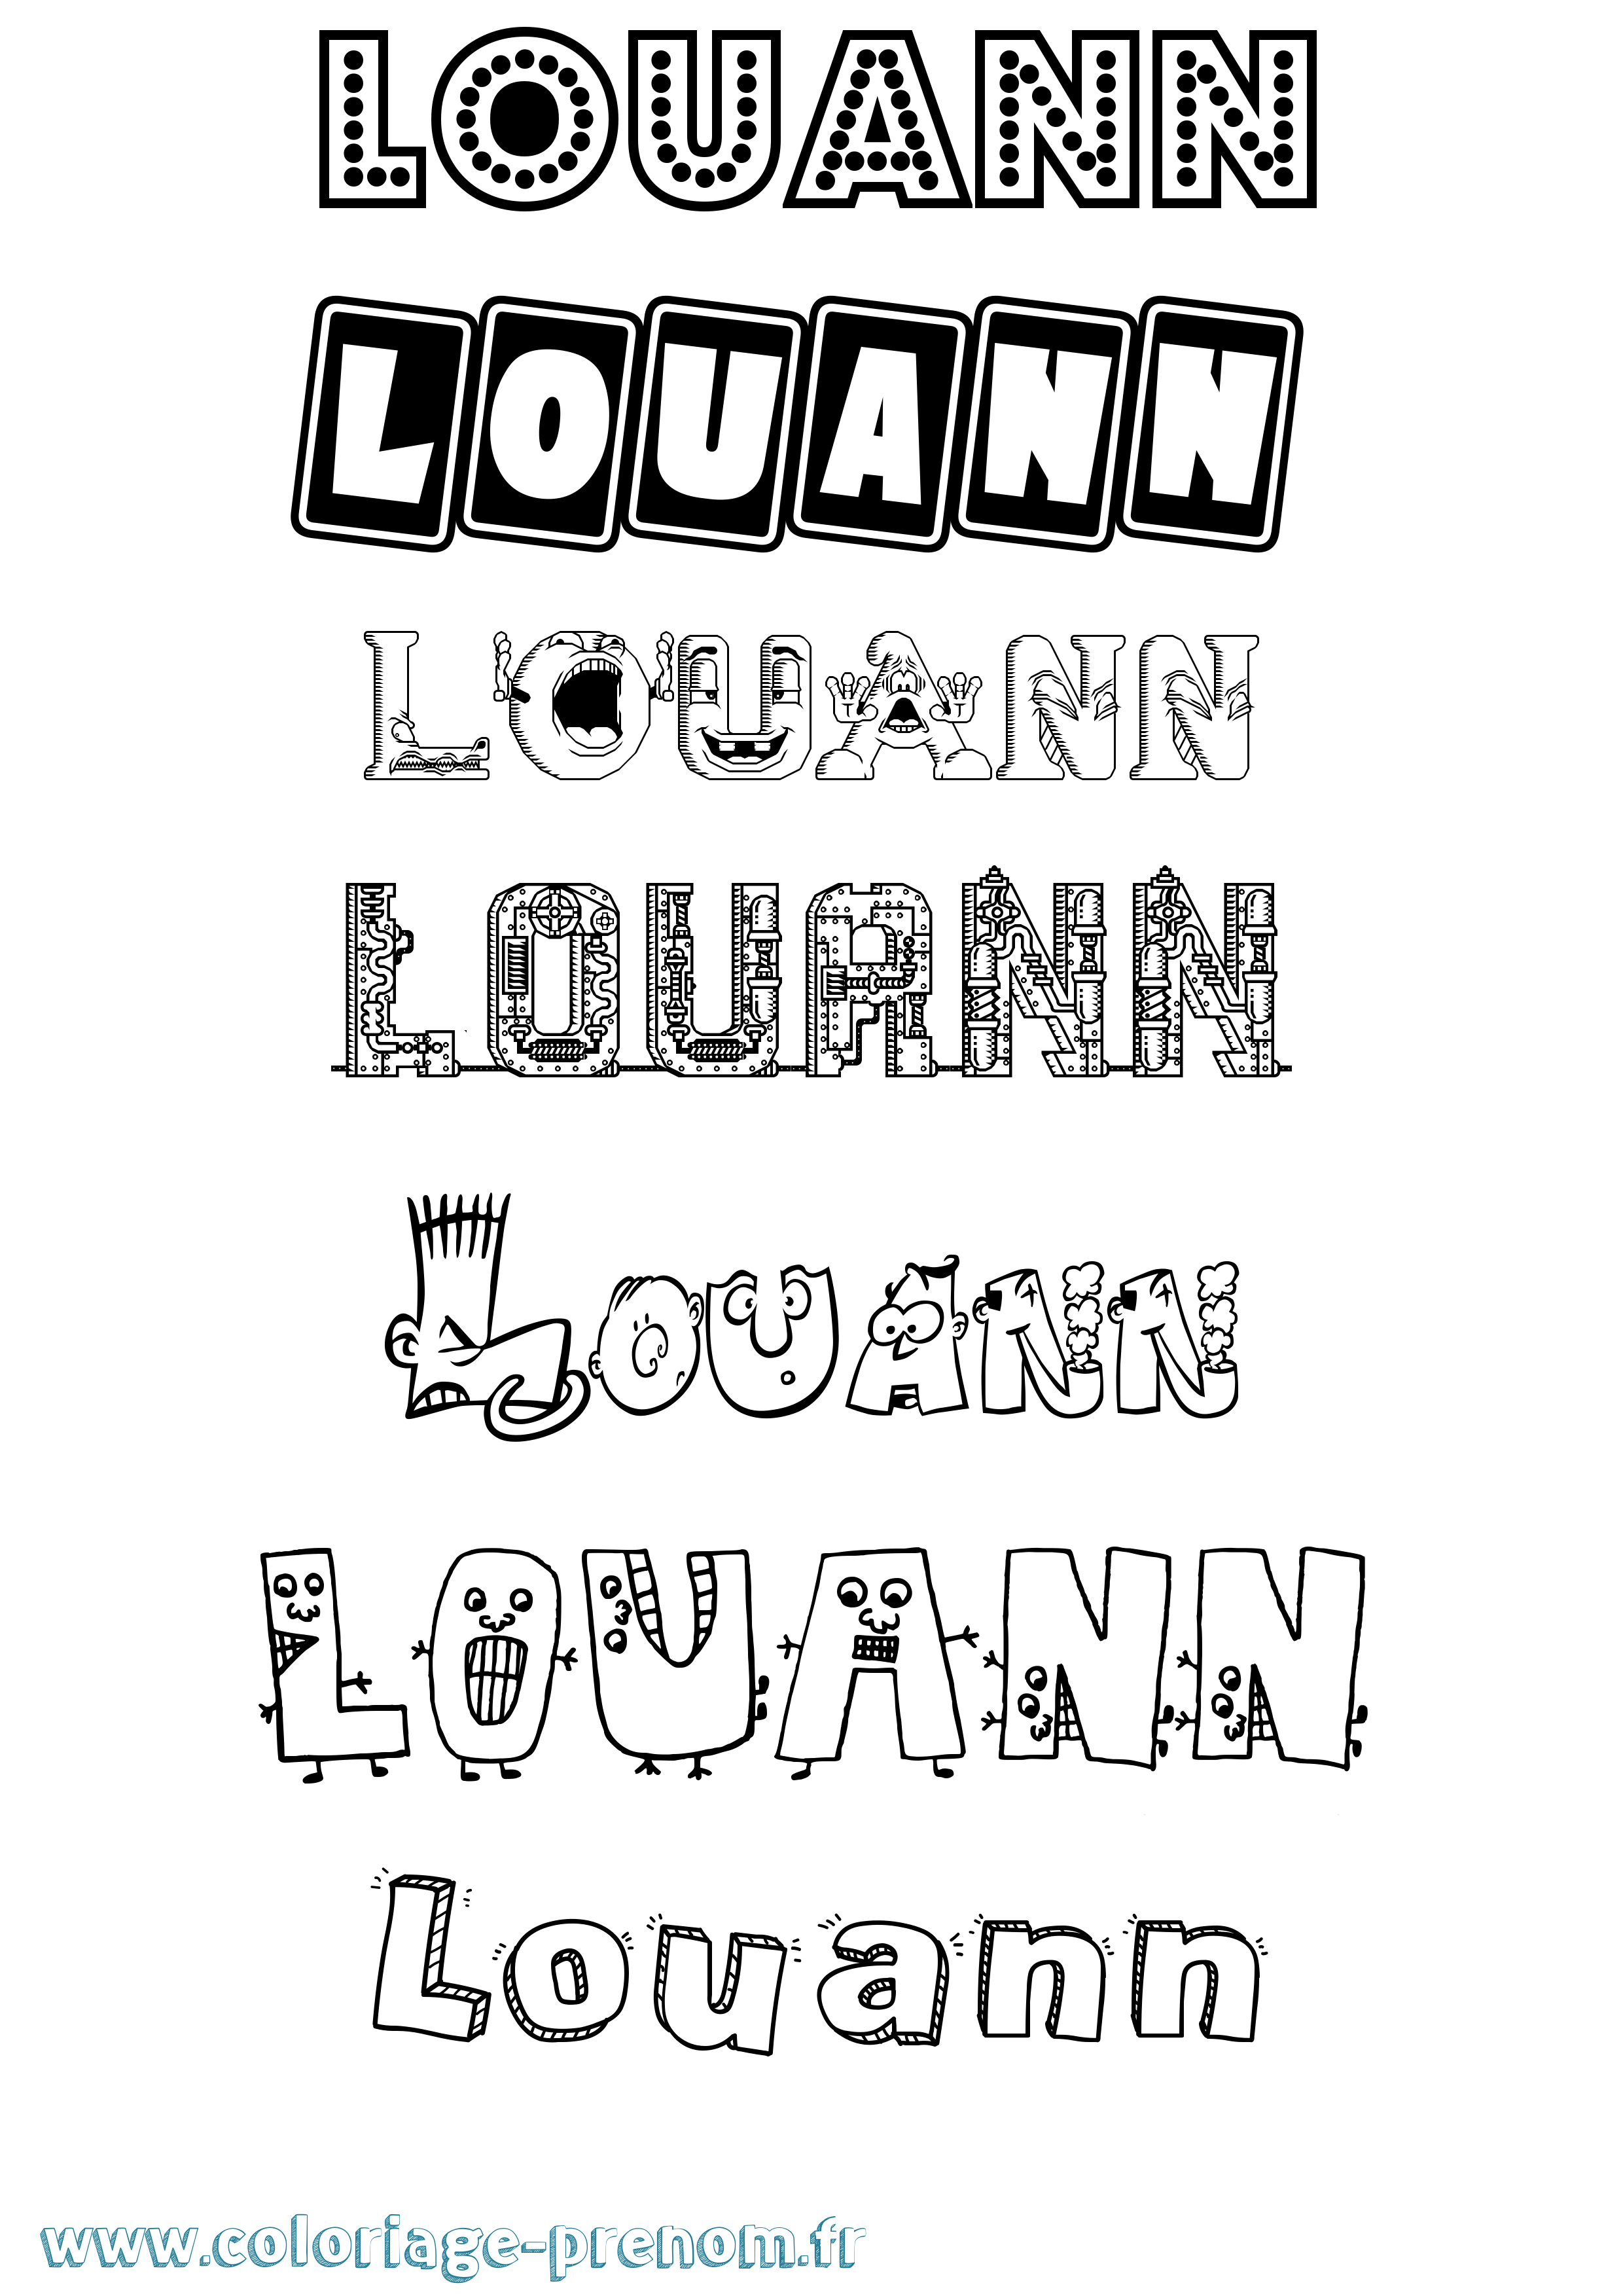 Coloriage prénom Louann Fun